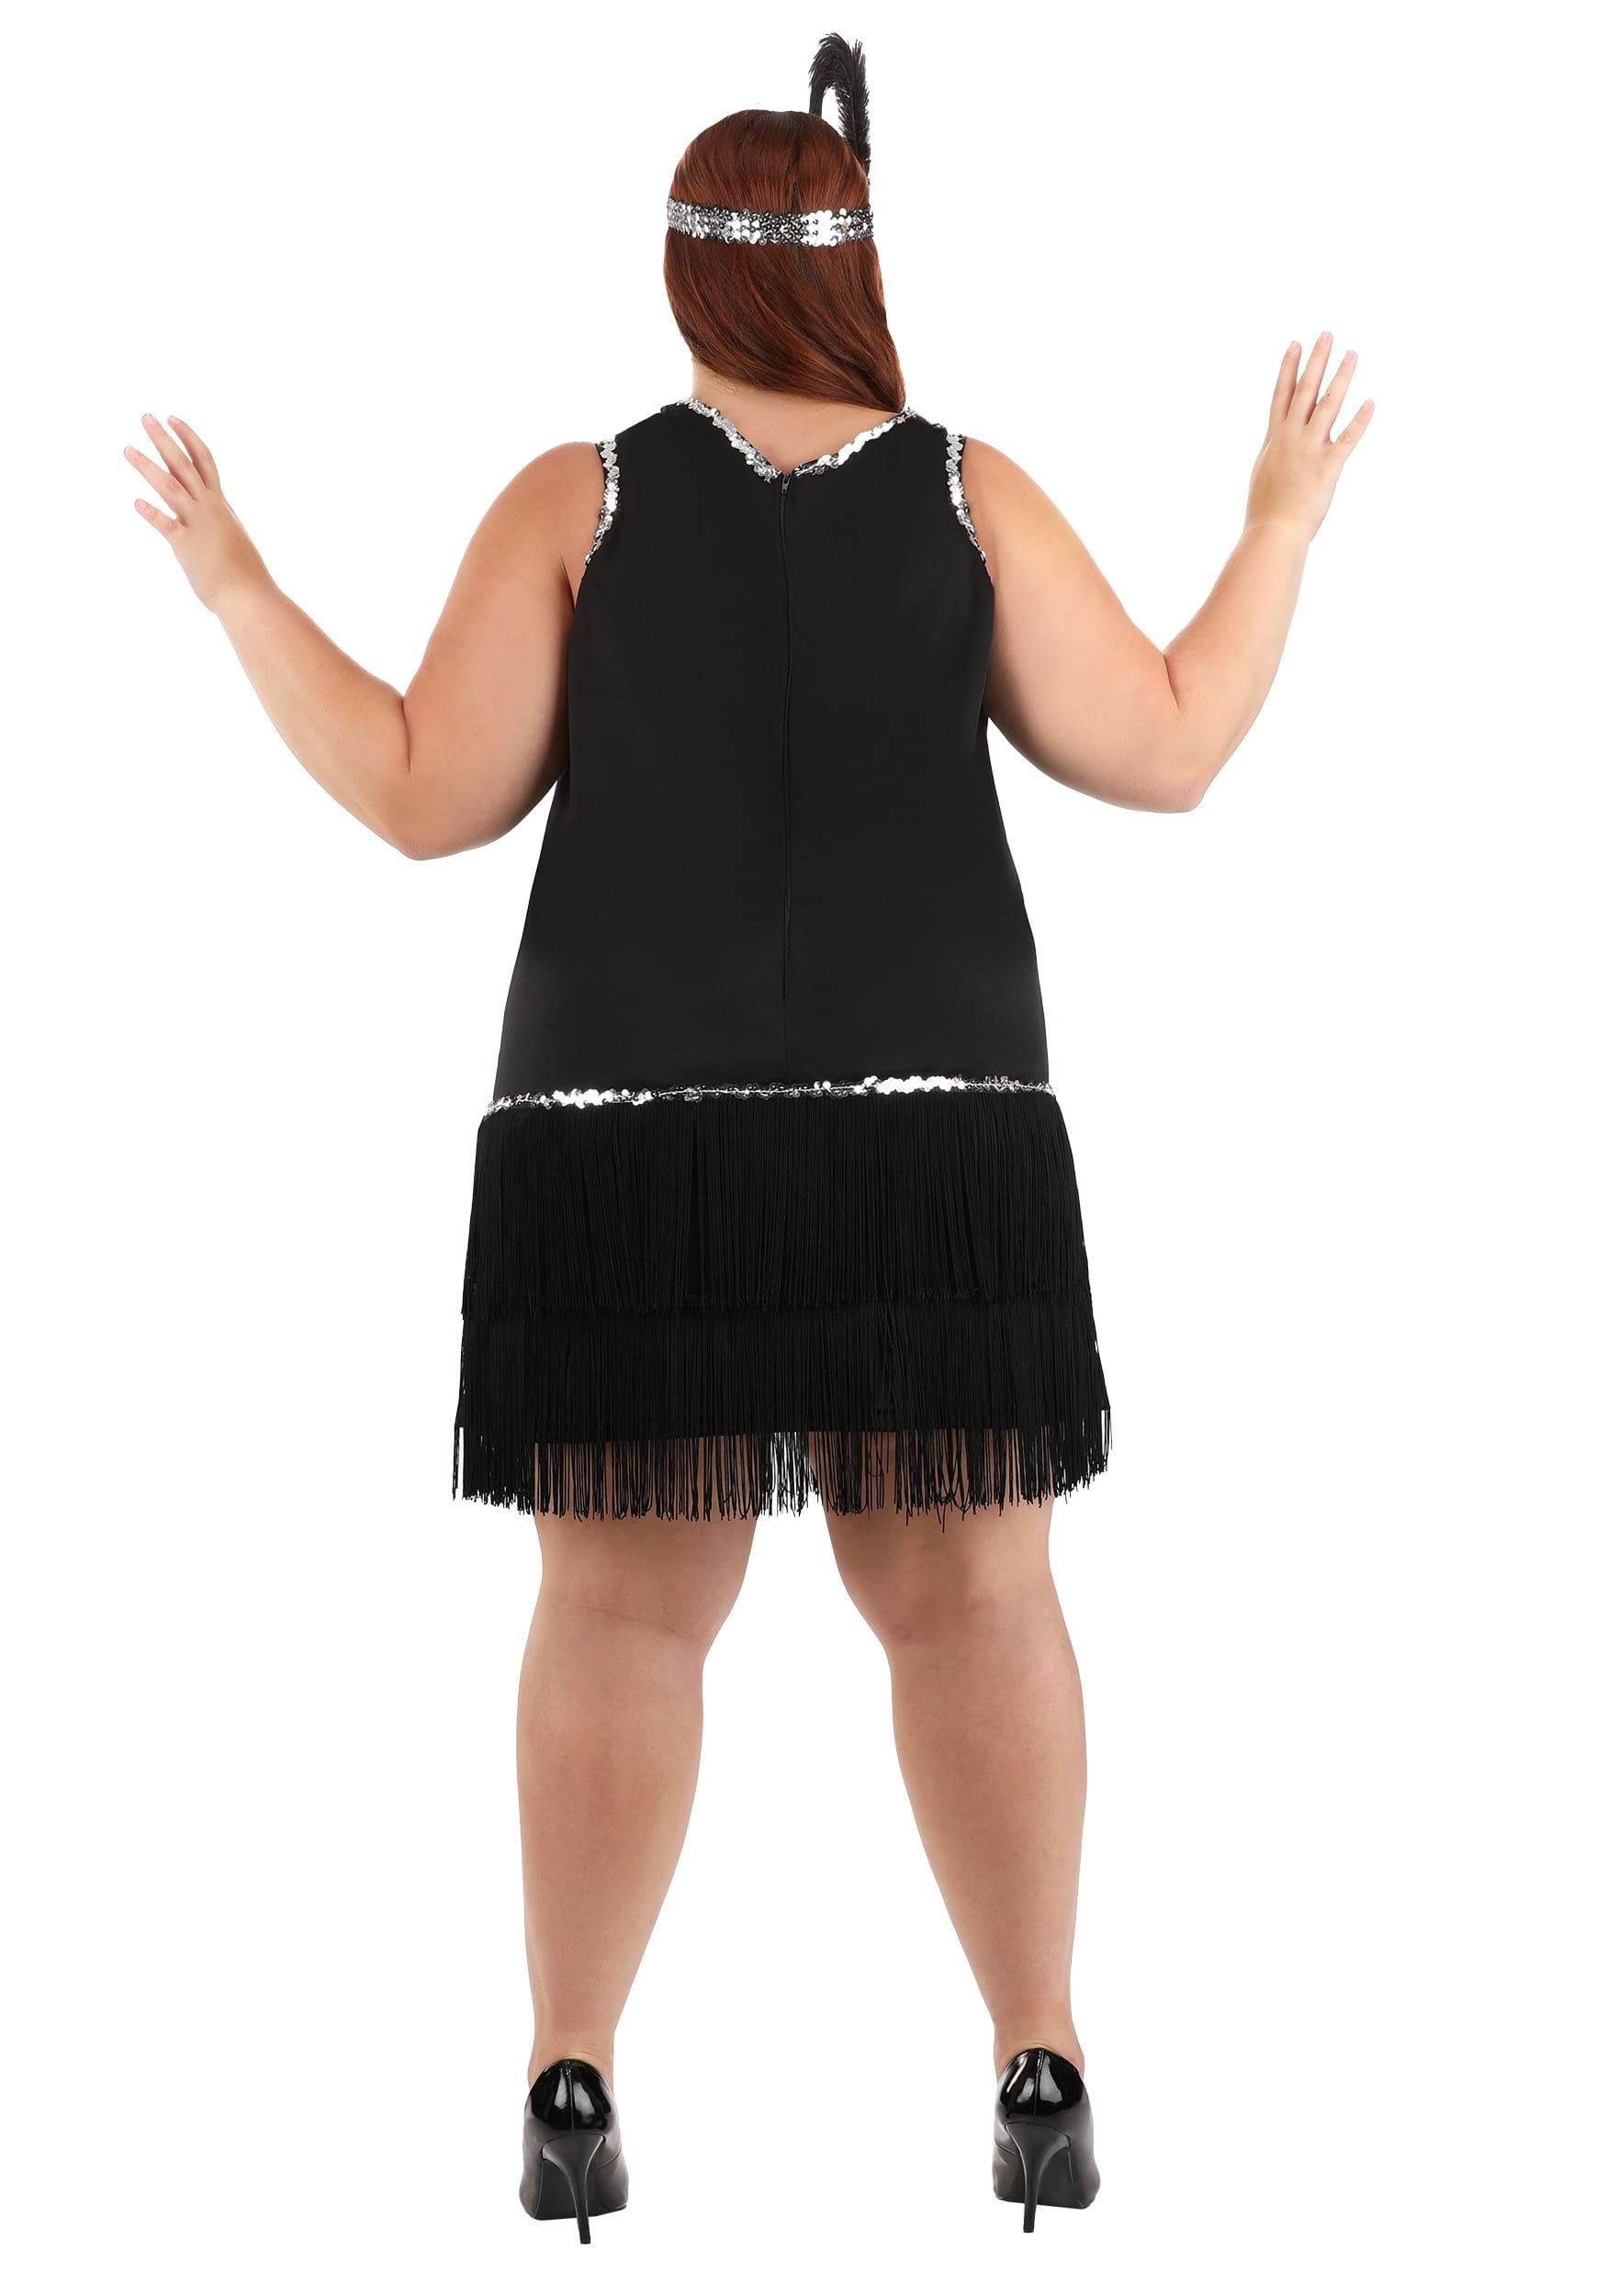 Plus Size Onyx Flapper Fancy Dress Costume For Women